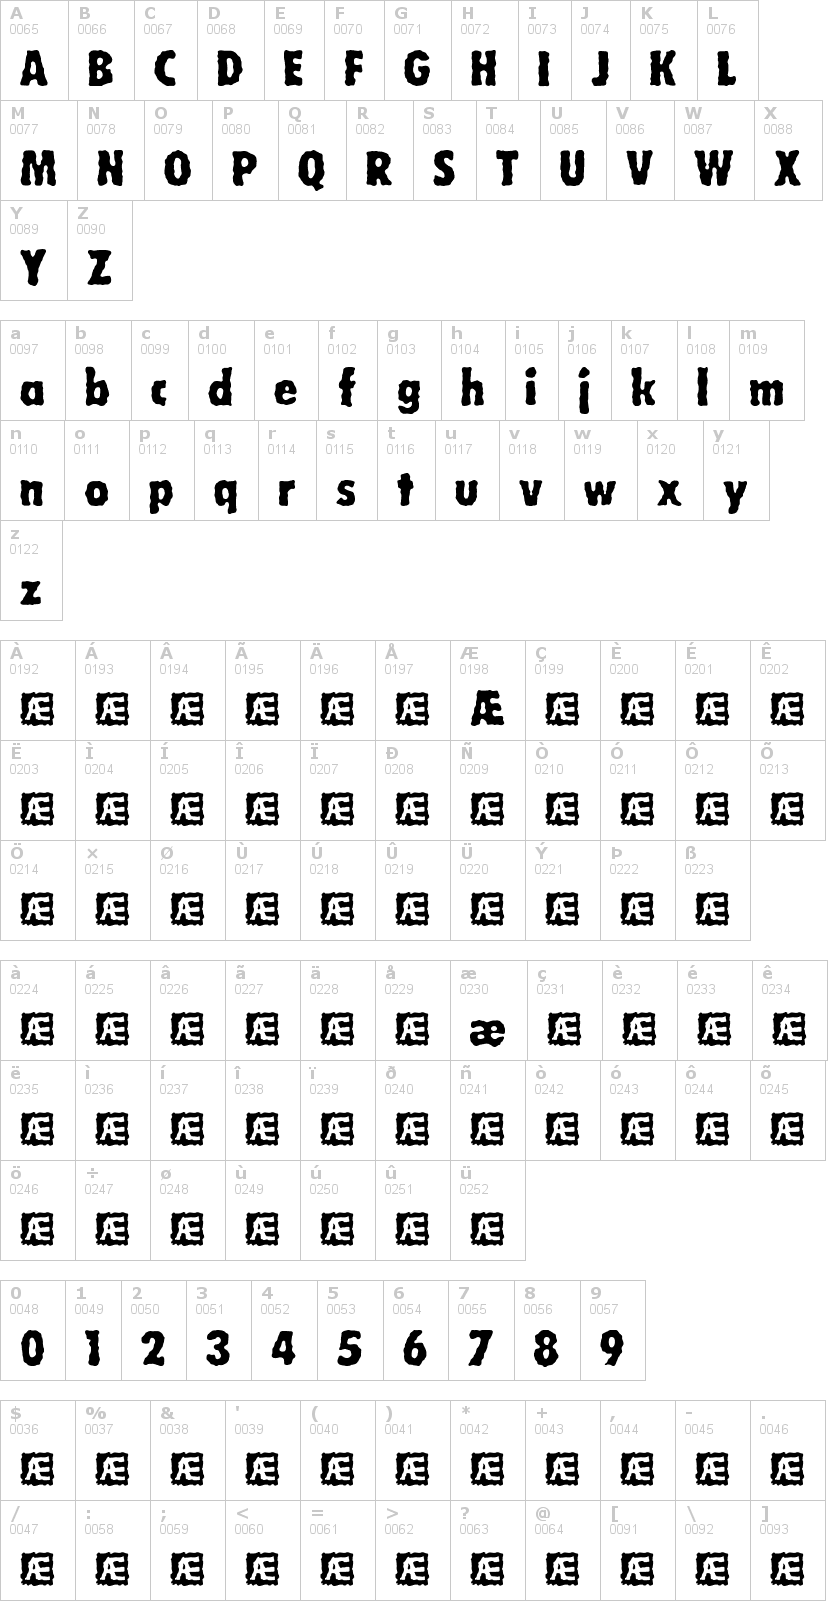 Lettere dell'alfabeto del font wobbly-brk con le quali è possibile realizzare adesivi prespaziati